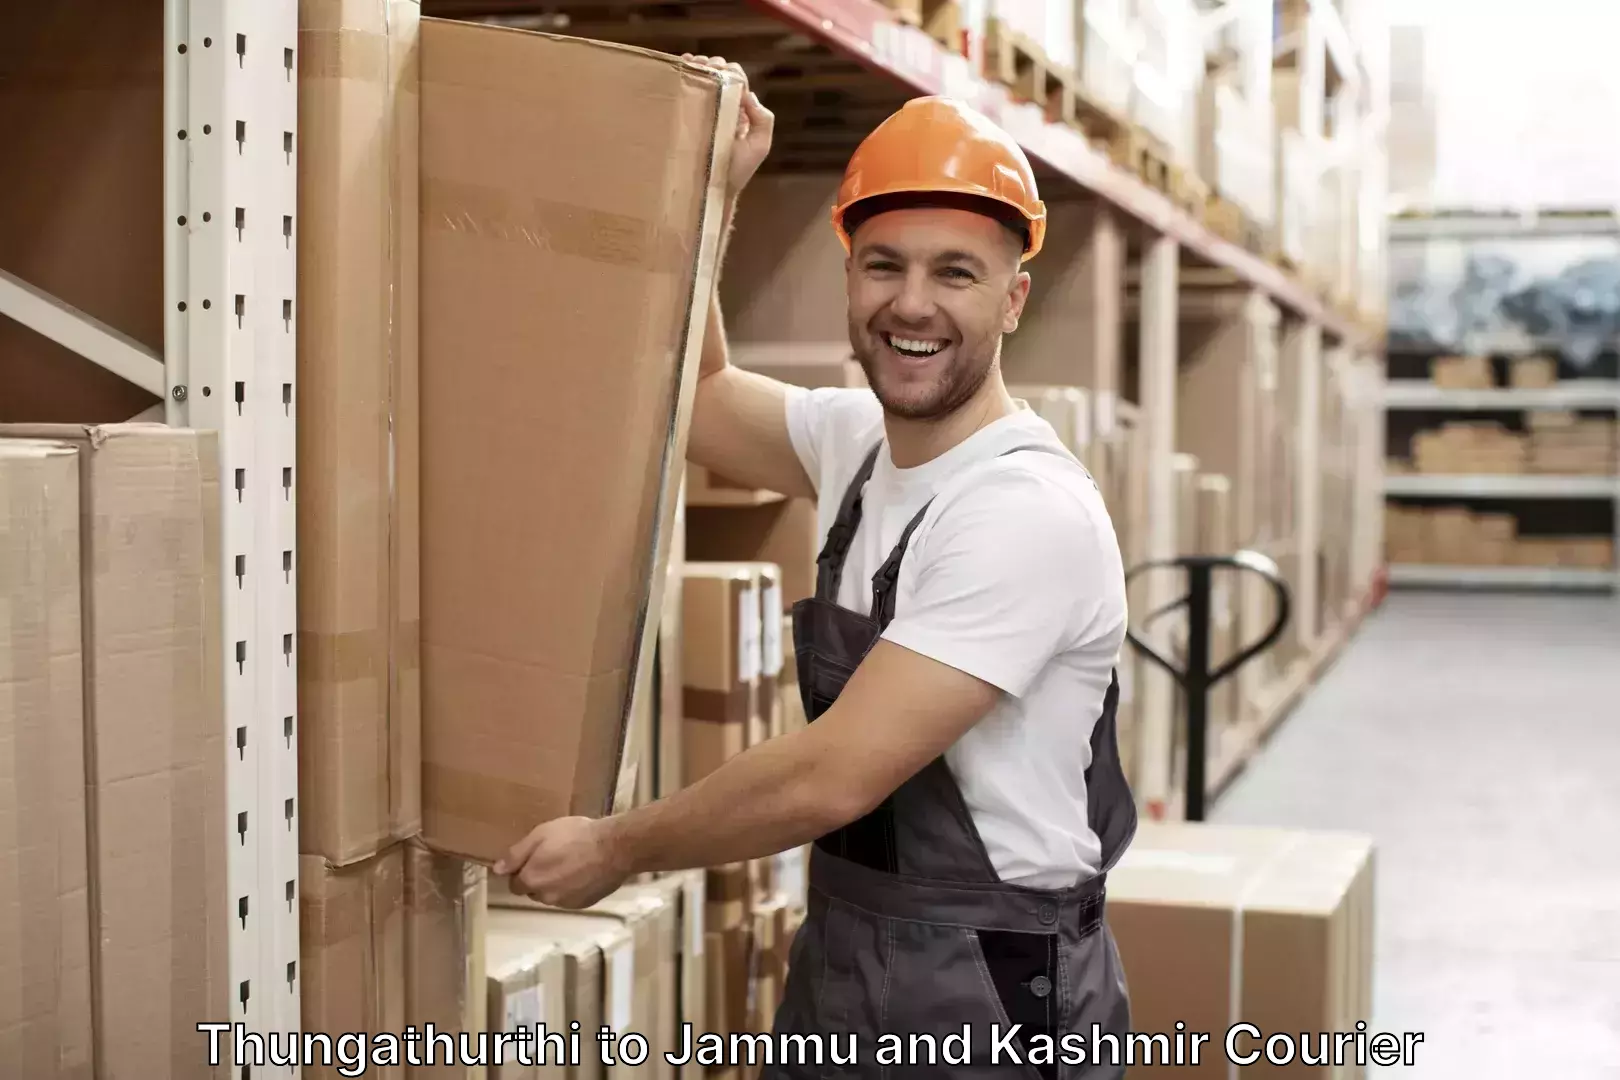 Reliable luggage courier Thungathurthi to University of Kashmir Srinagar